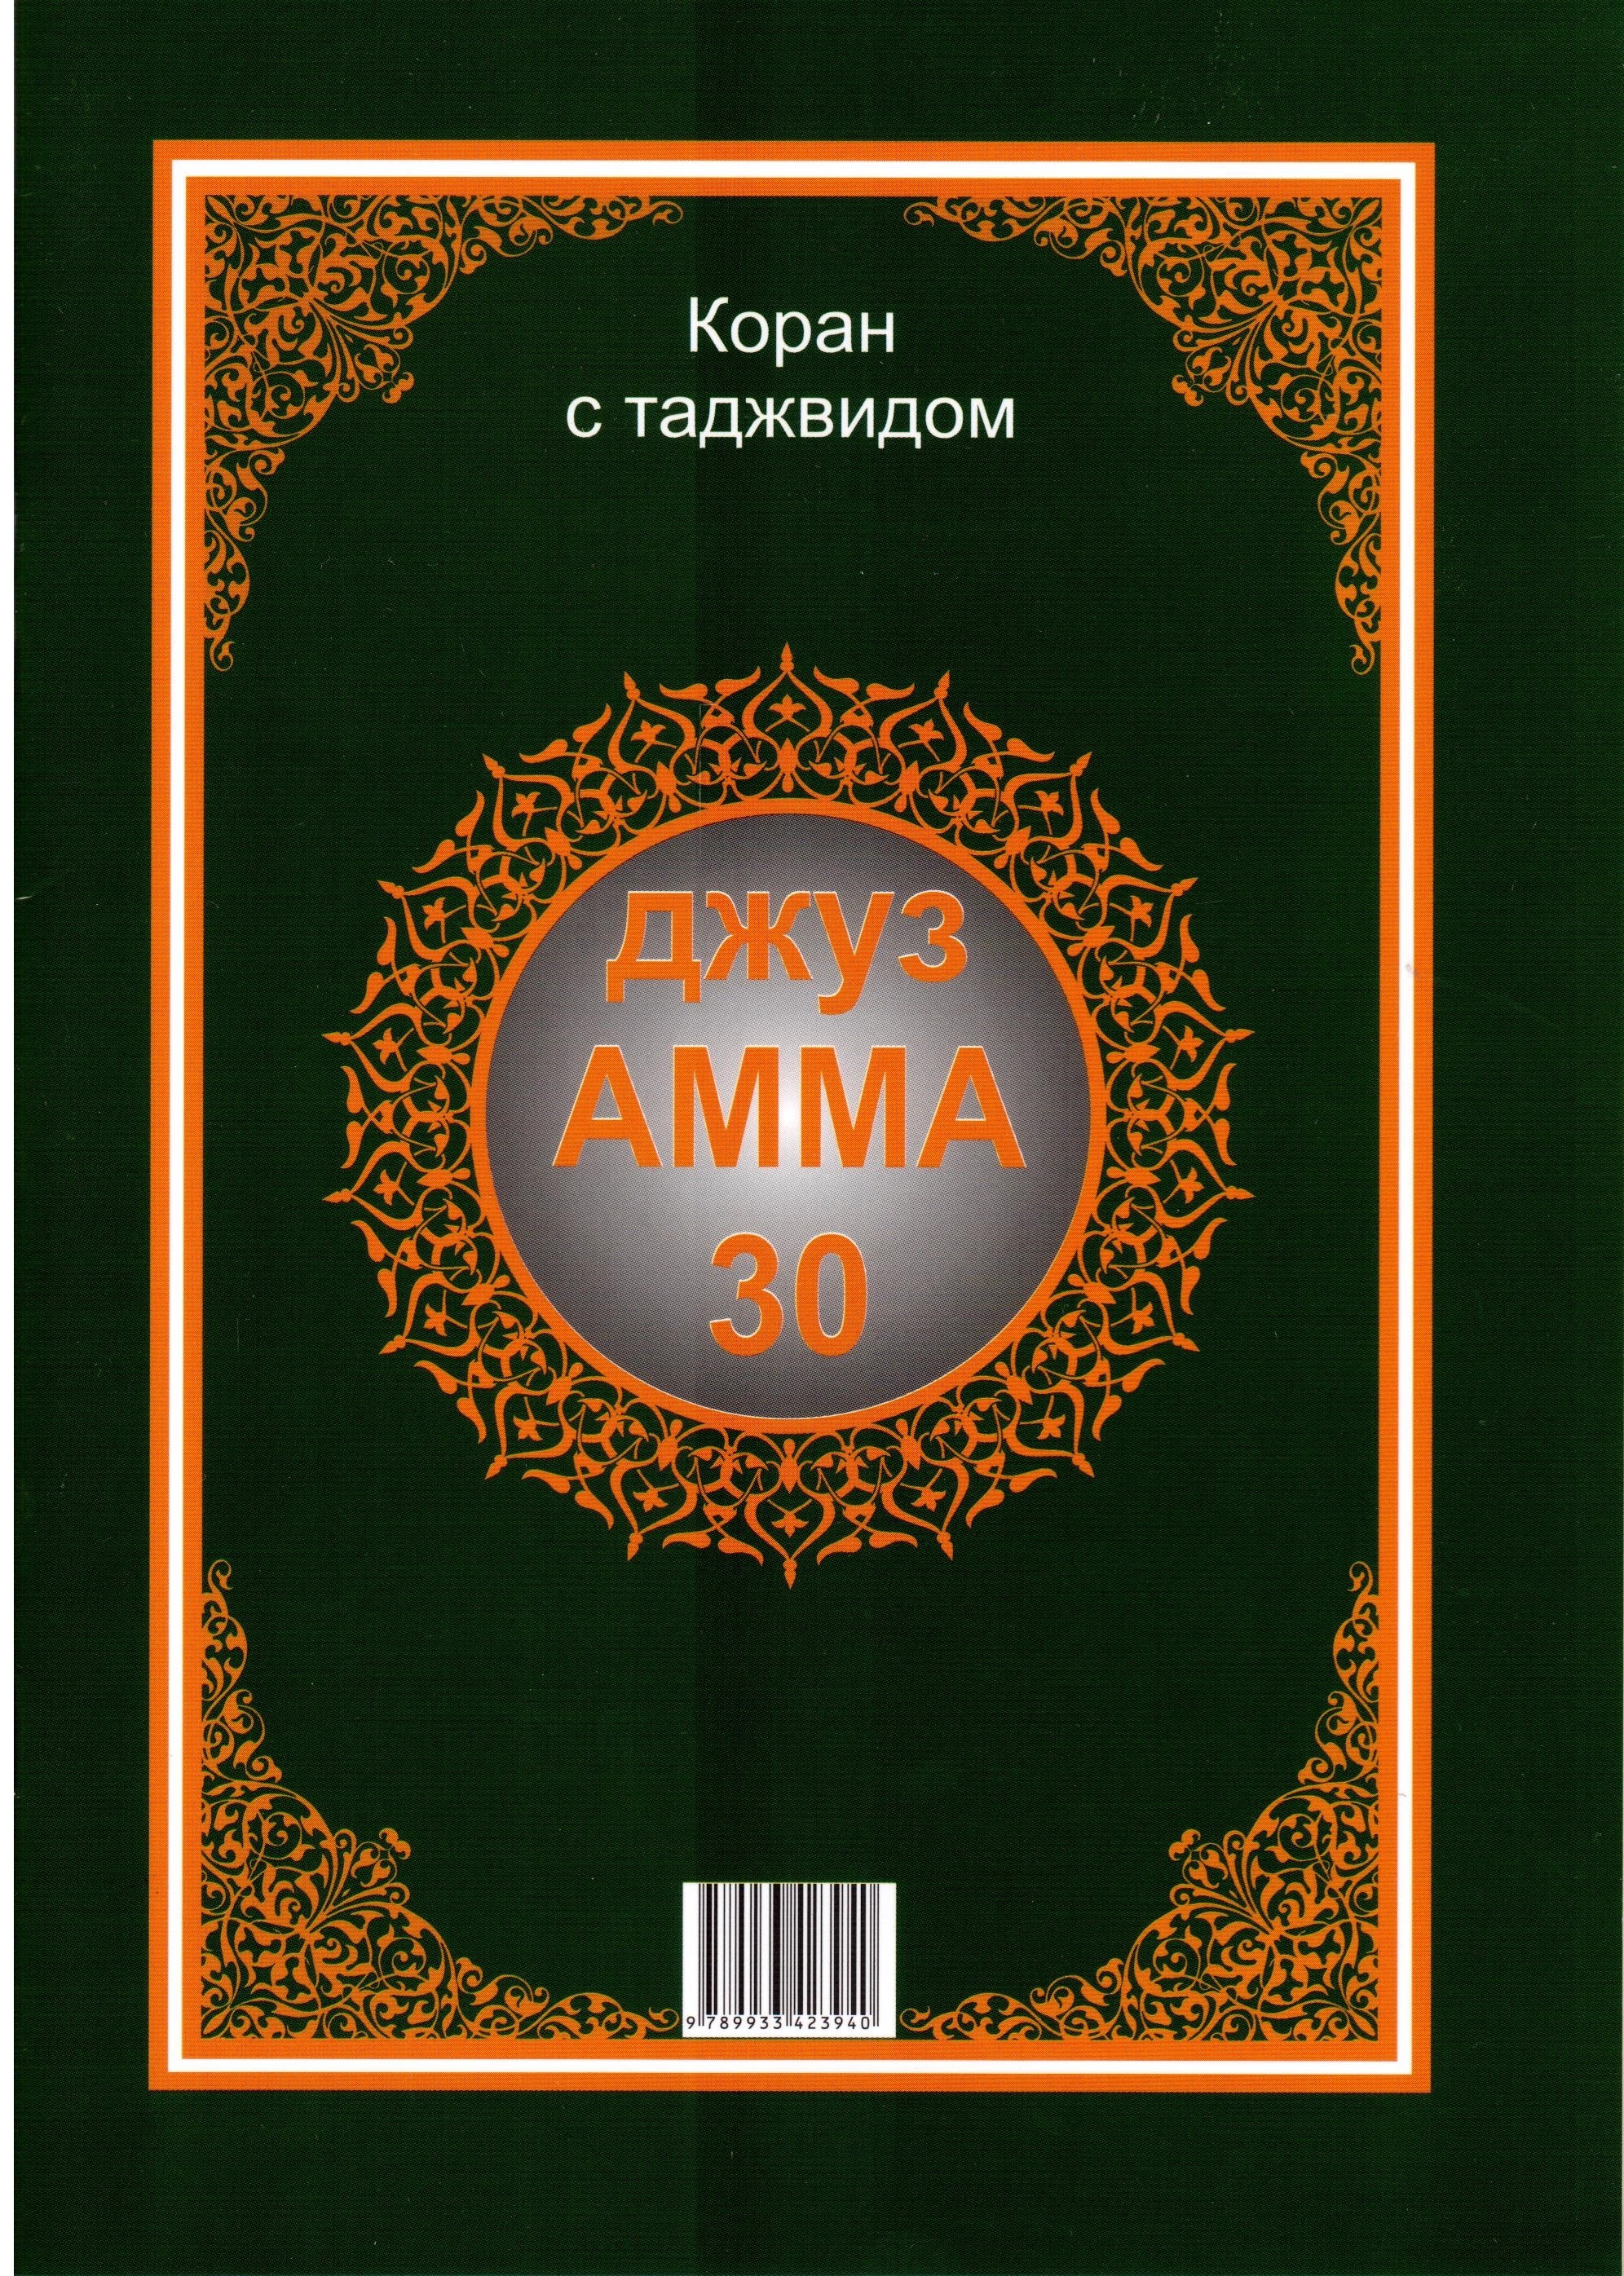 Коран на татарском скачать книгу